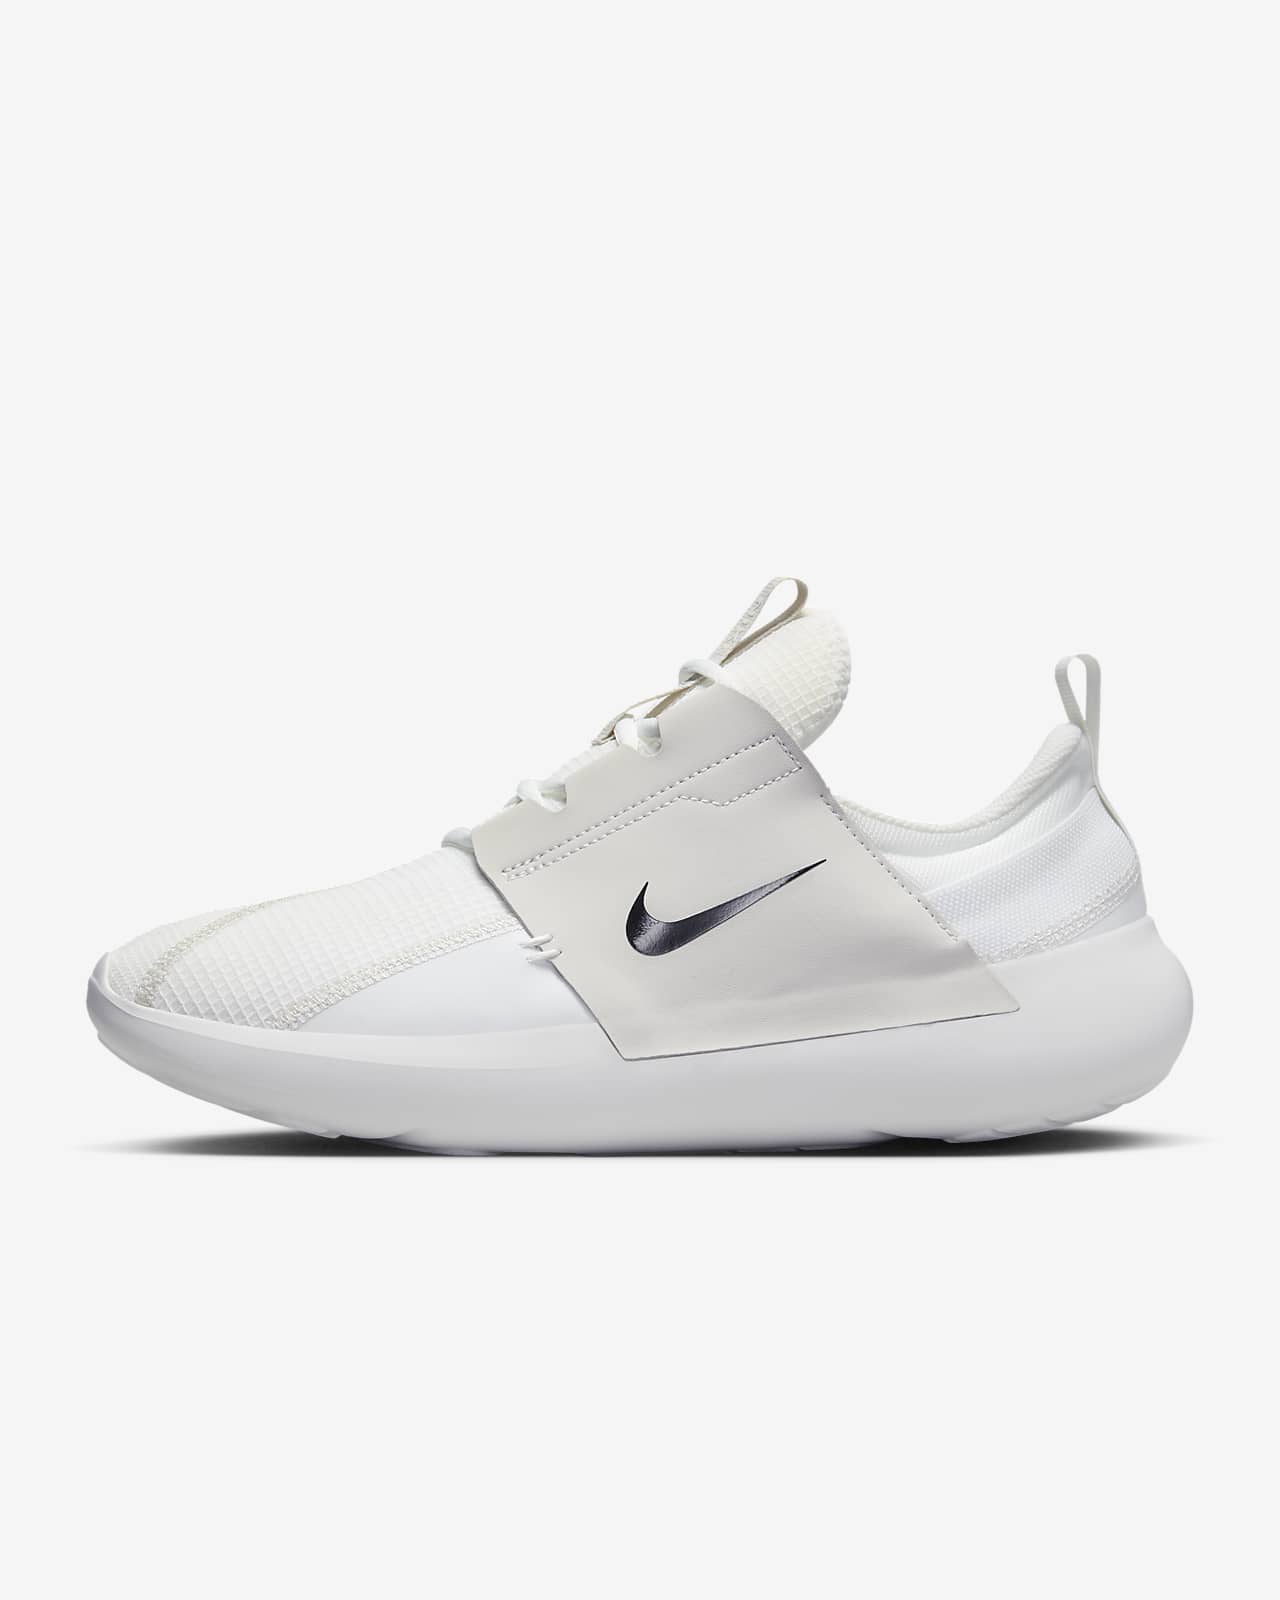 Nike E-Series AD 男鞋